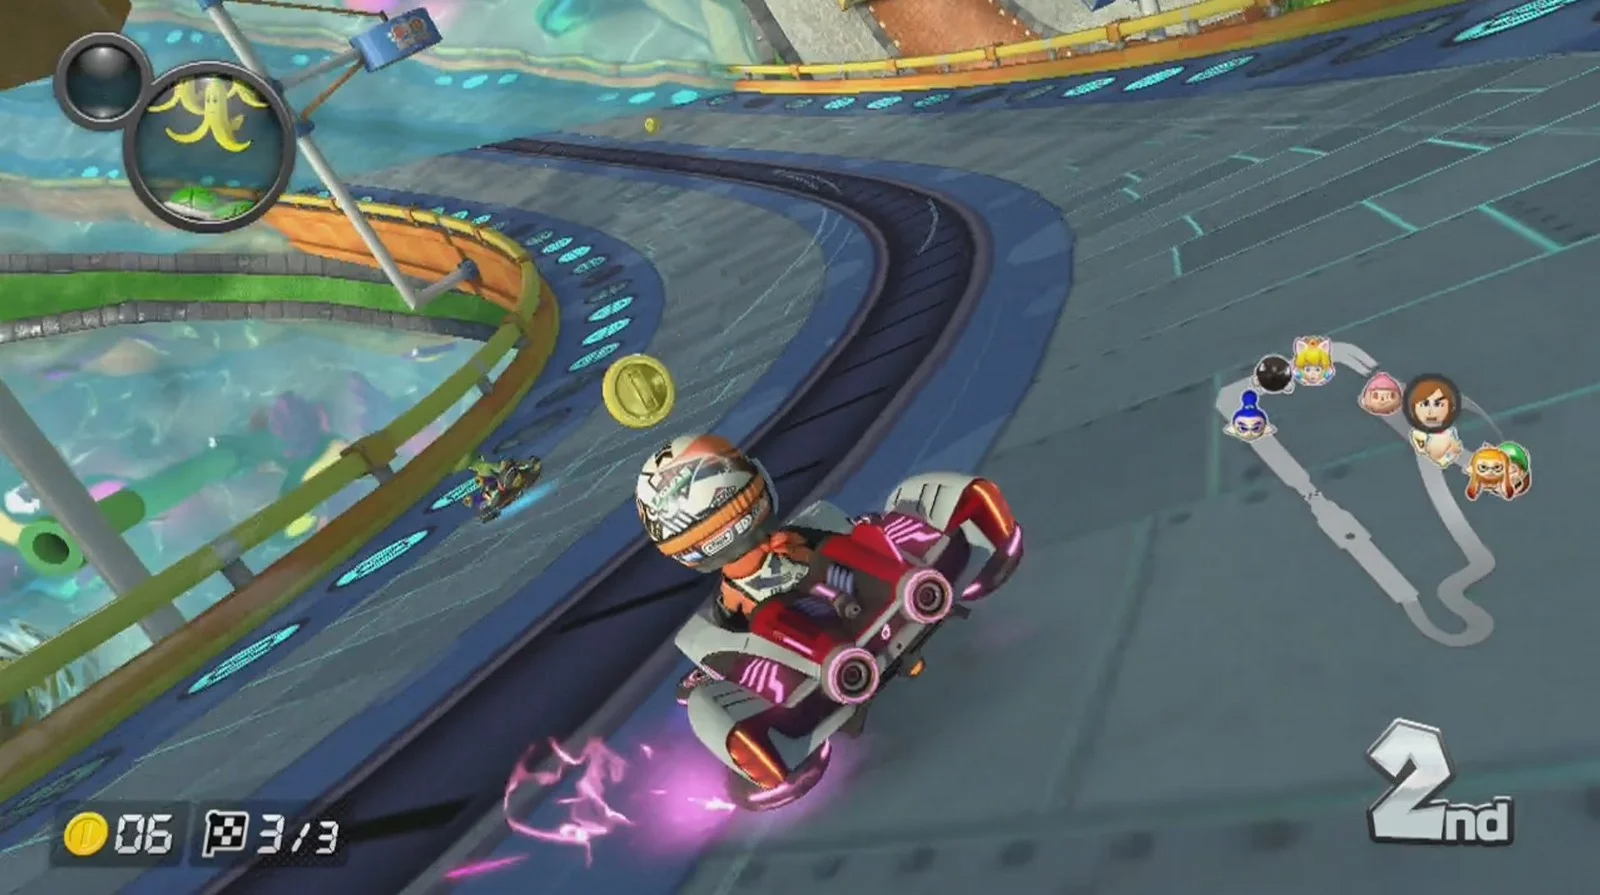 Other Boosts in Mario Kart 8 Deluxe 